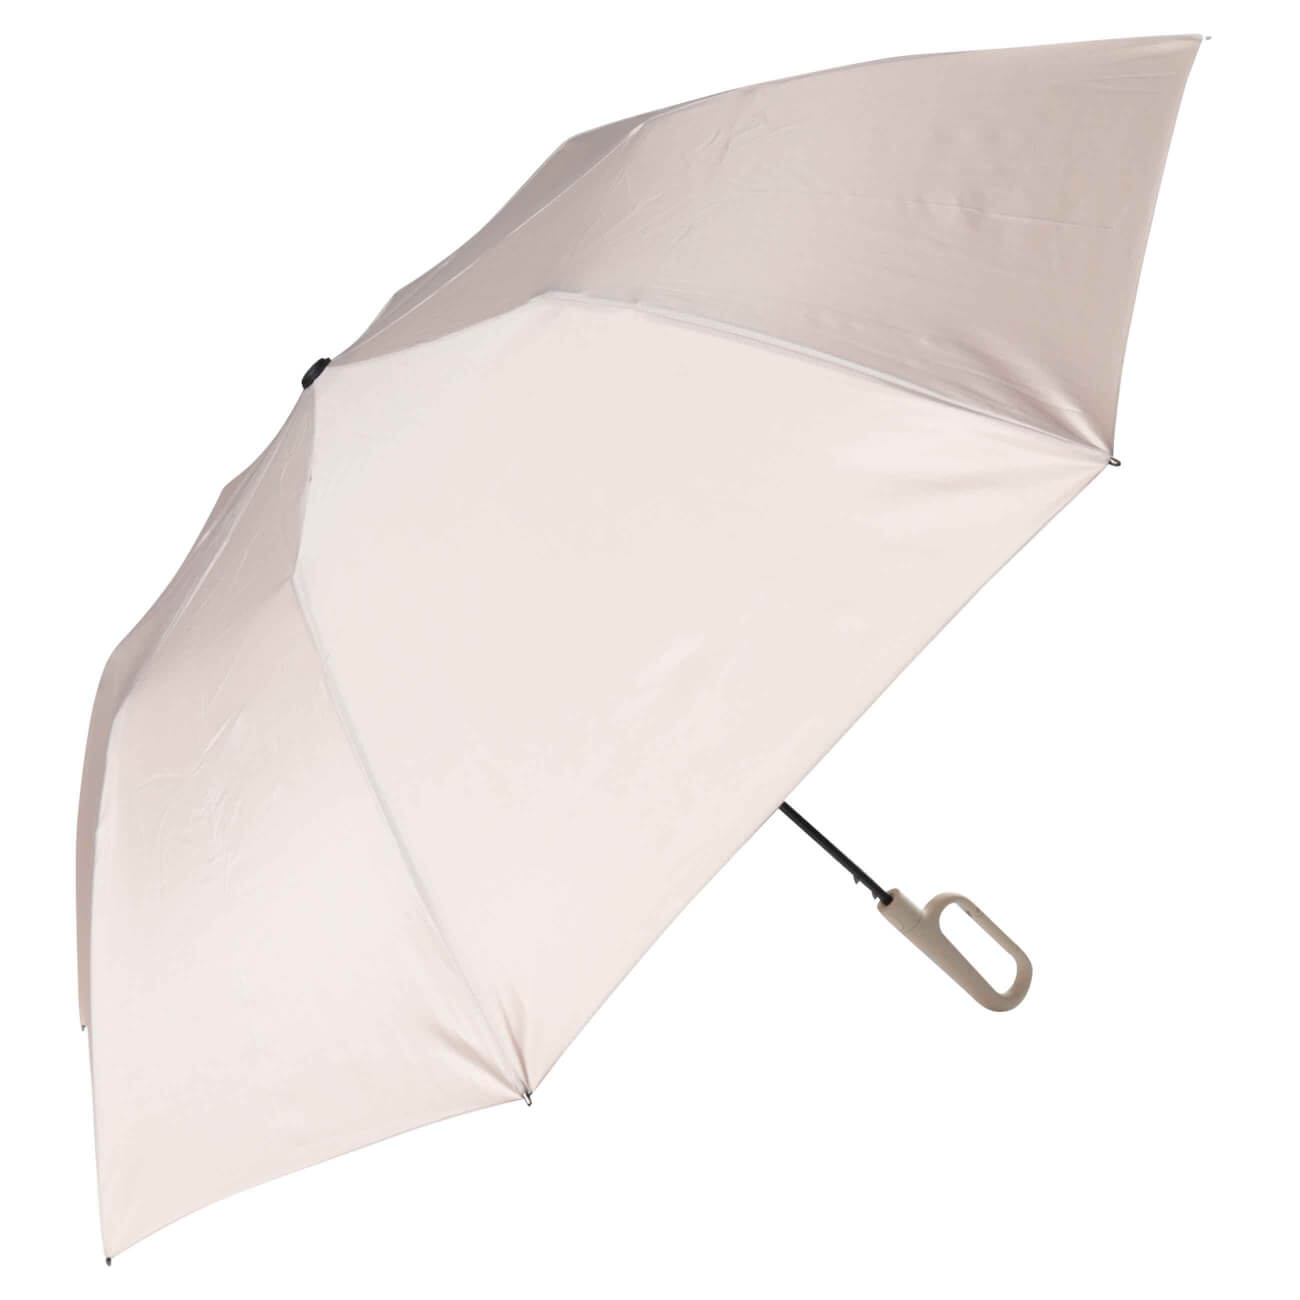 Зонт, 70 см, складной, полу-автоматический, с ручкой-карабином, эпонж, бежевый, Rainfall изображение № 1